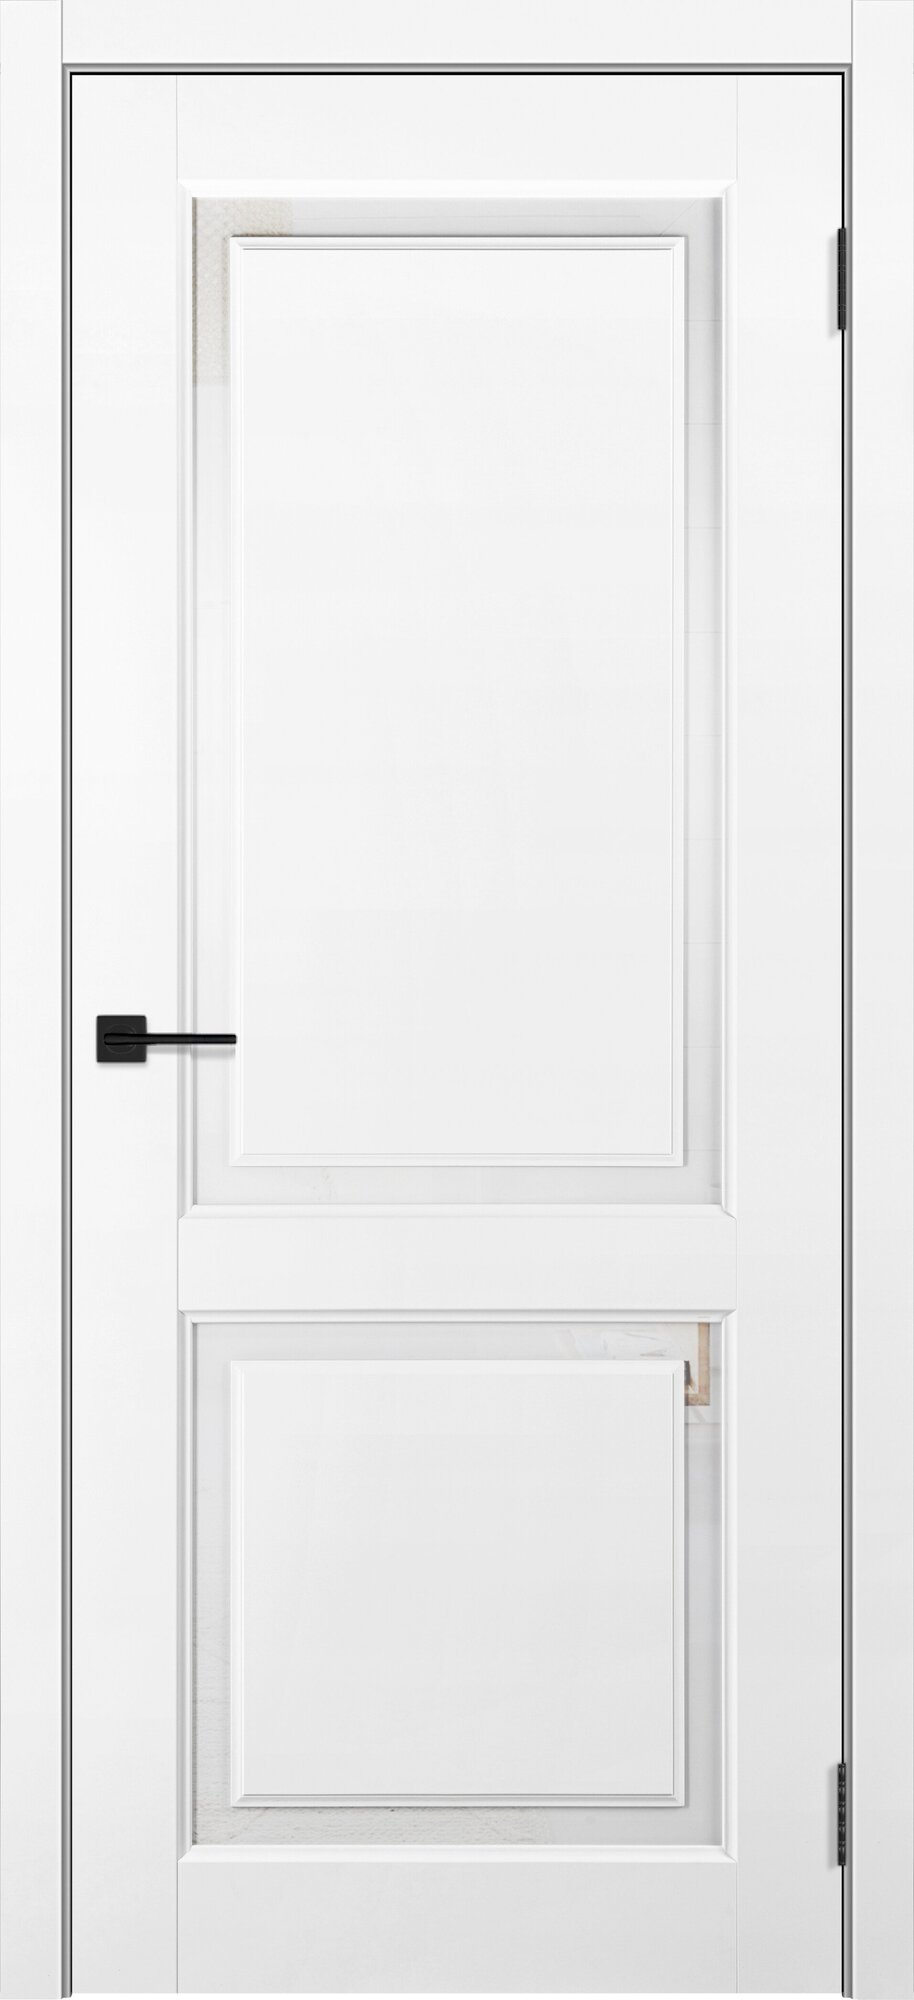 Межкомнатная дверь "Ллойд" - полотно, частично остекленная, покрытие Soft touch, толщина полотна 36. 600*2000*36мм